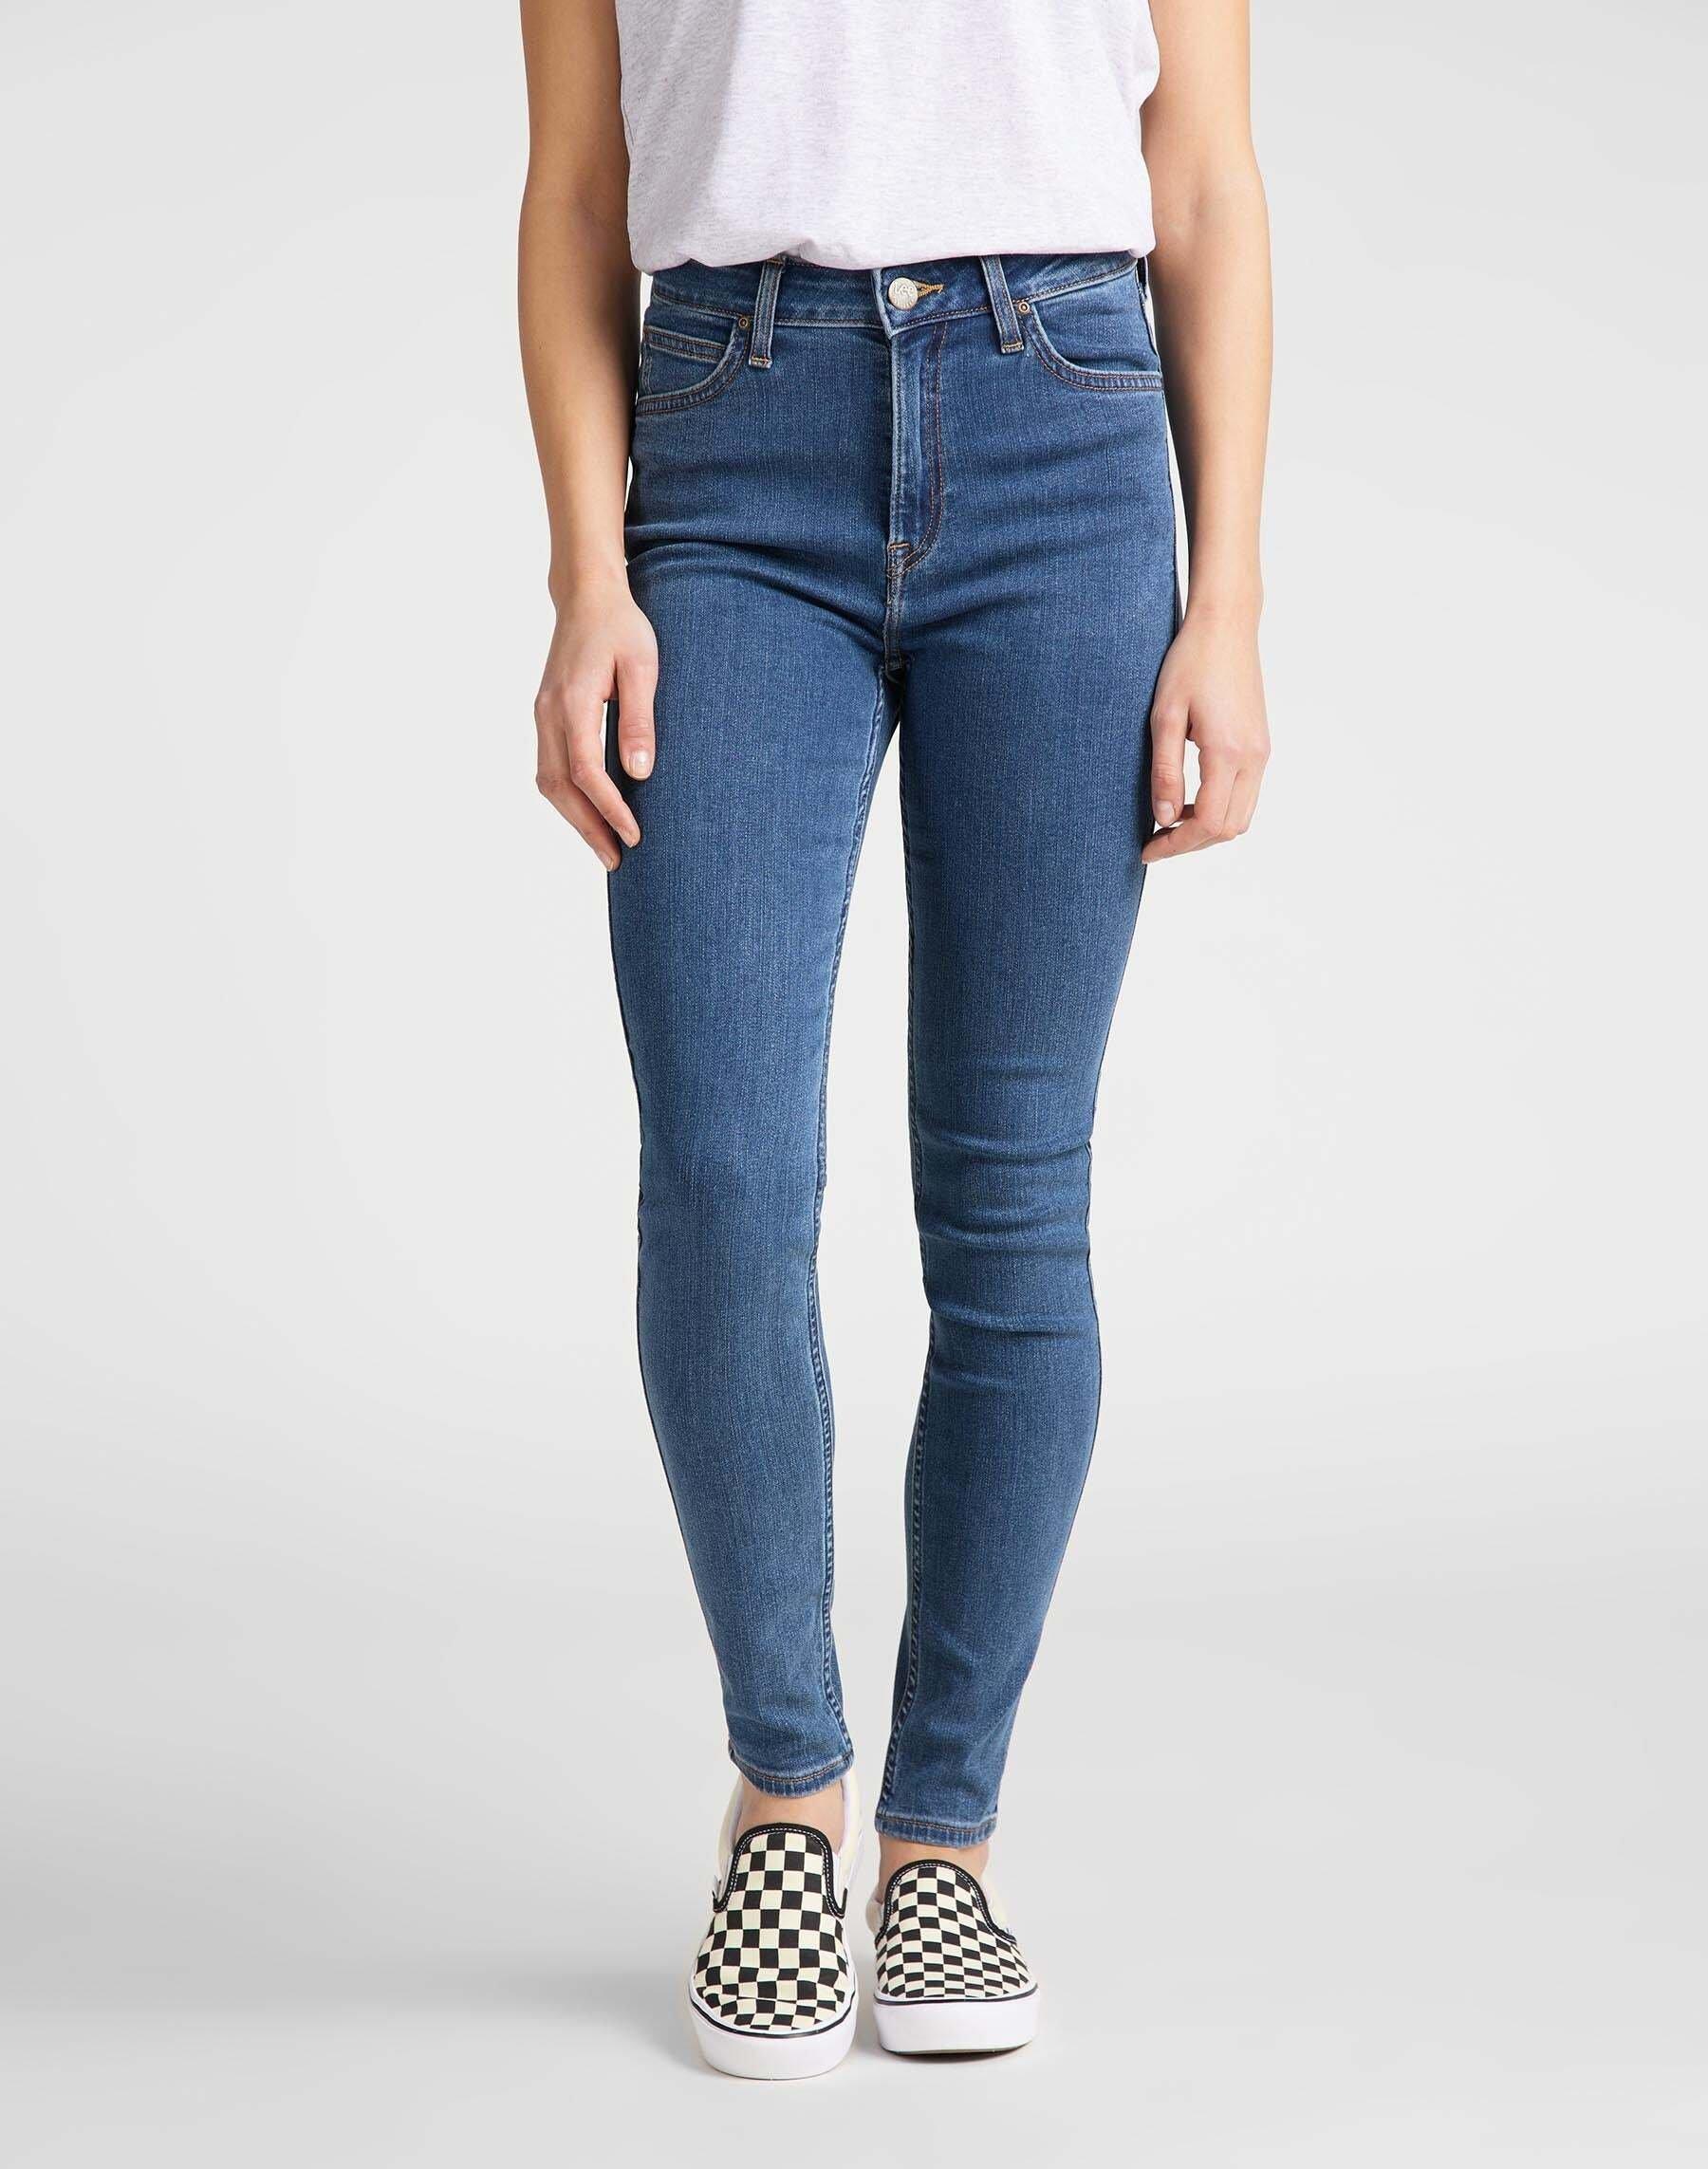 Jeans Super Skinny Fit Ivy High Waist Damen Blau Denim L31/W31 von Lee